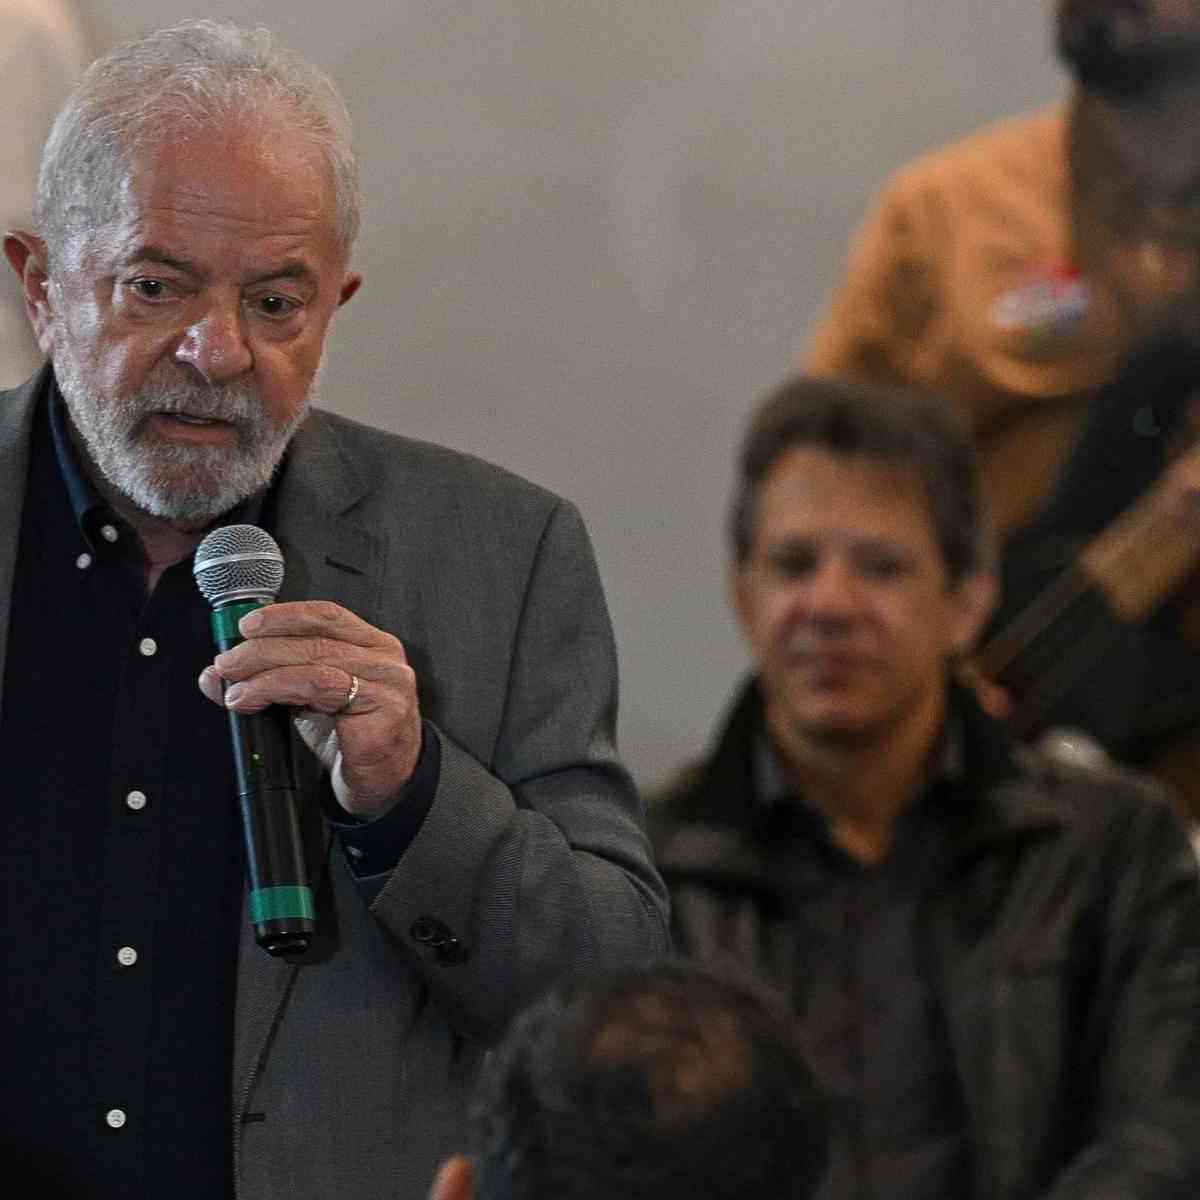 O presidente Luiz Inácio Lula da Silva (PT) conversou por telefone com